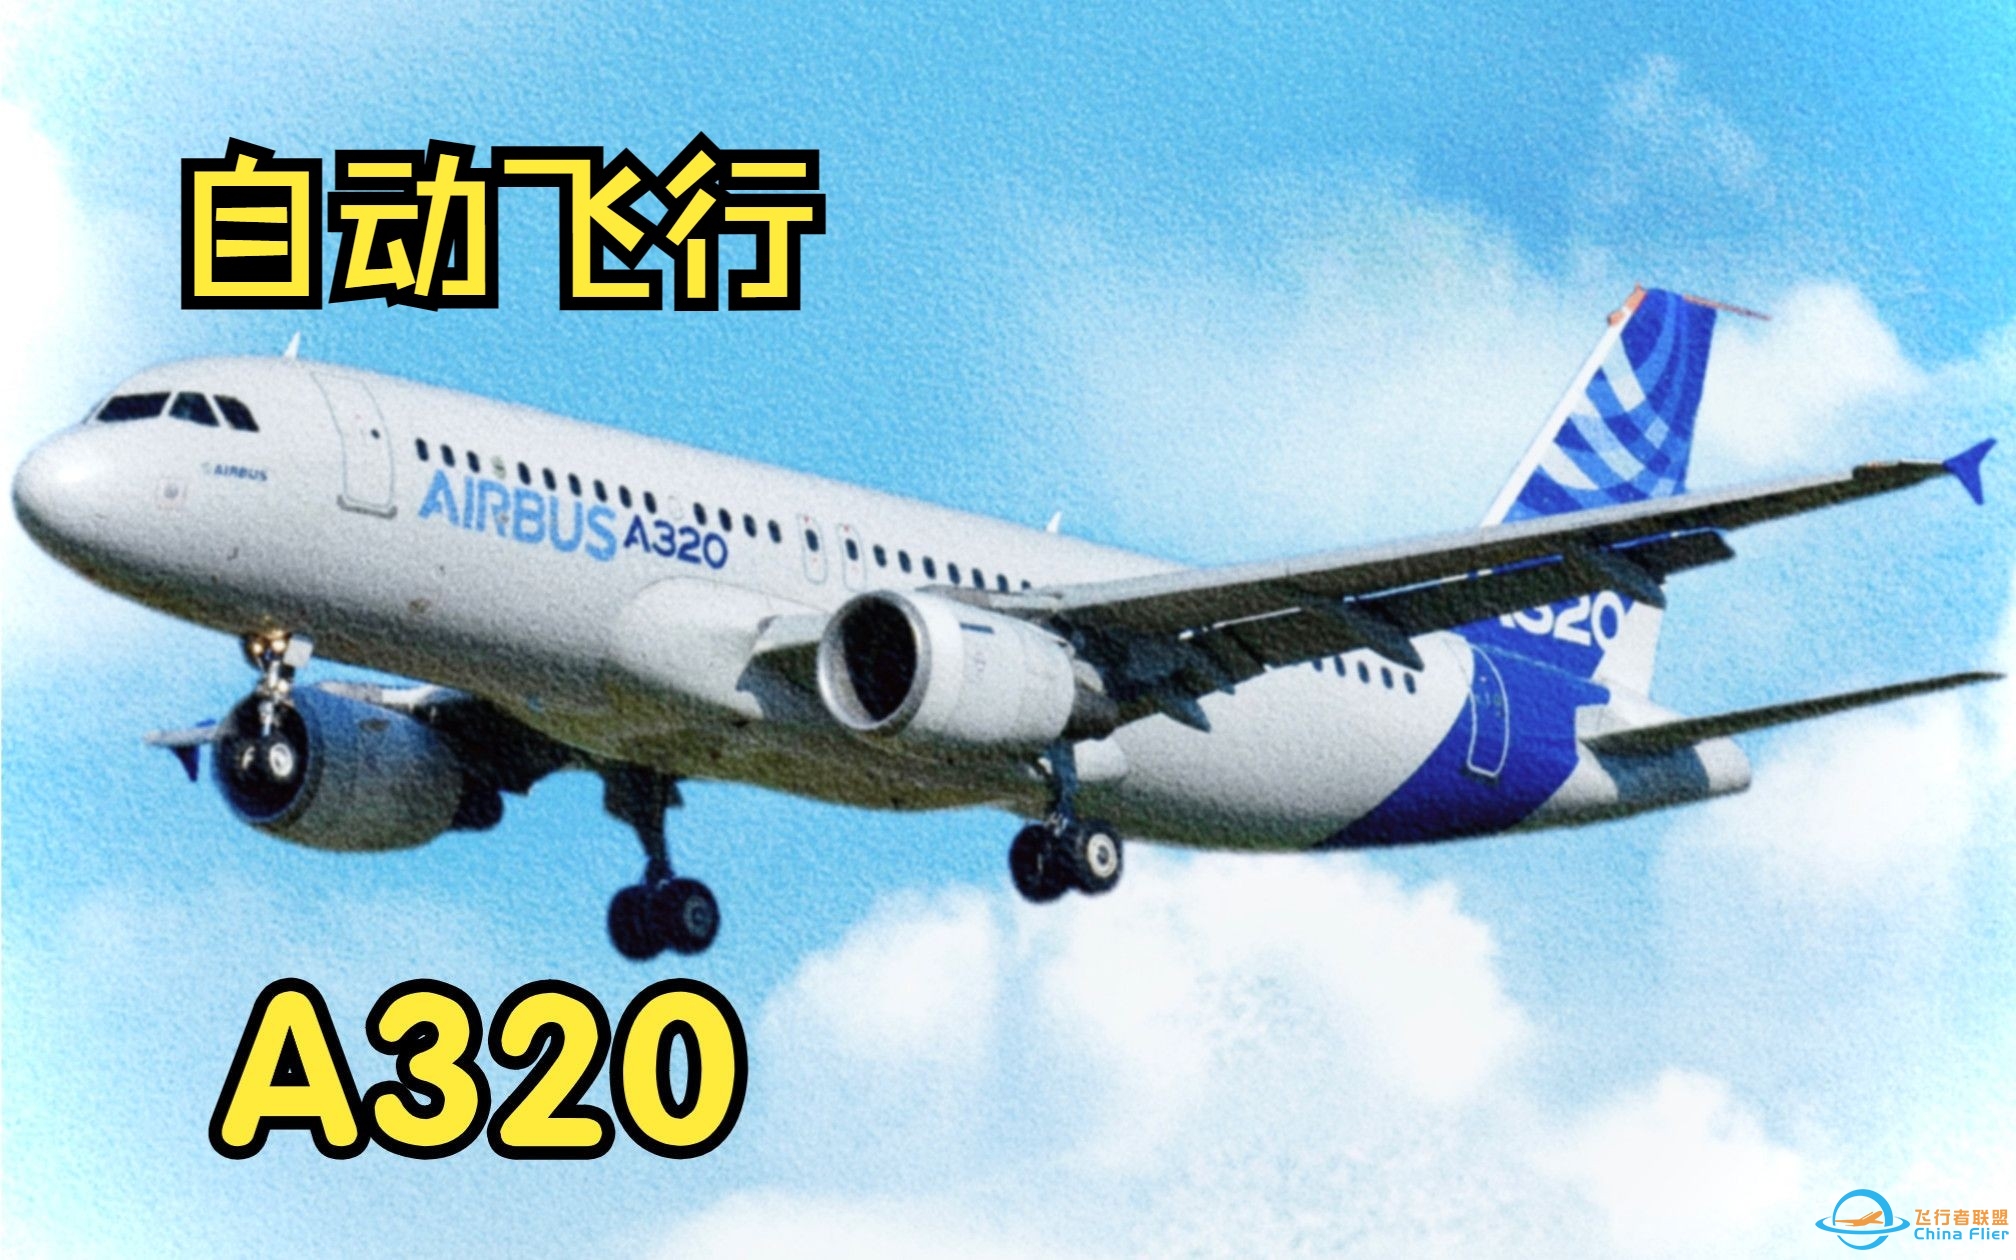 【飞行模拟从零学习空客A320】8.自动飞行系统-9909 